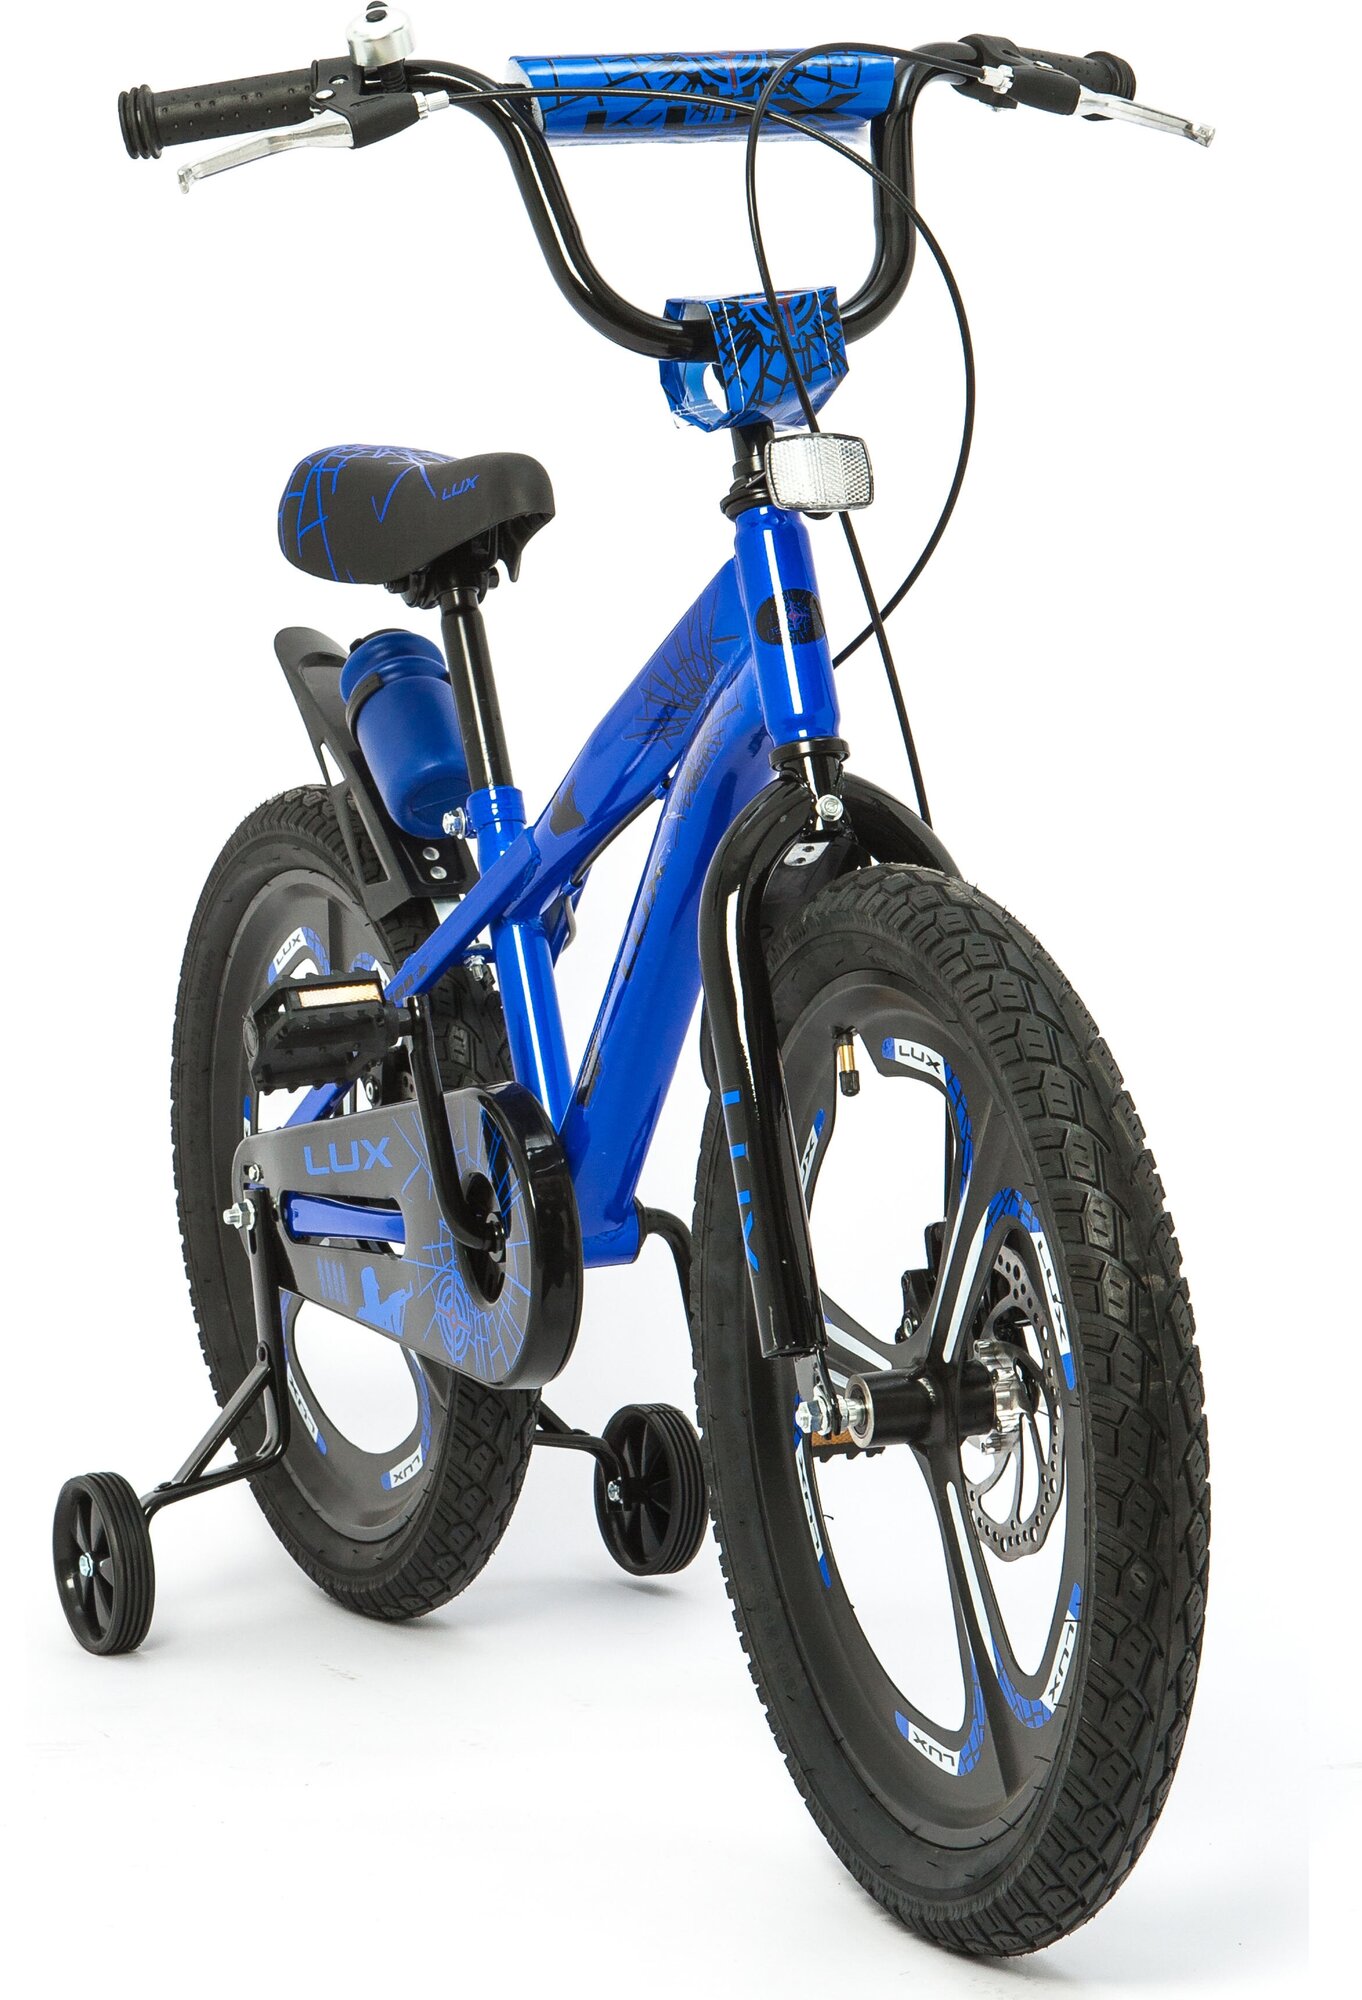 Велосипед детский ZIGZAG Lux, 20 дюймов, синий, от 6-9 лет